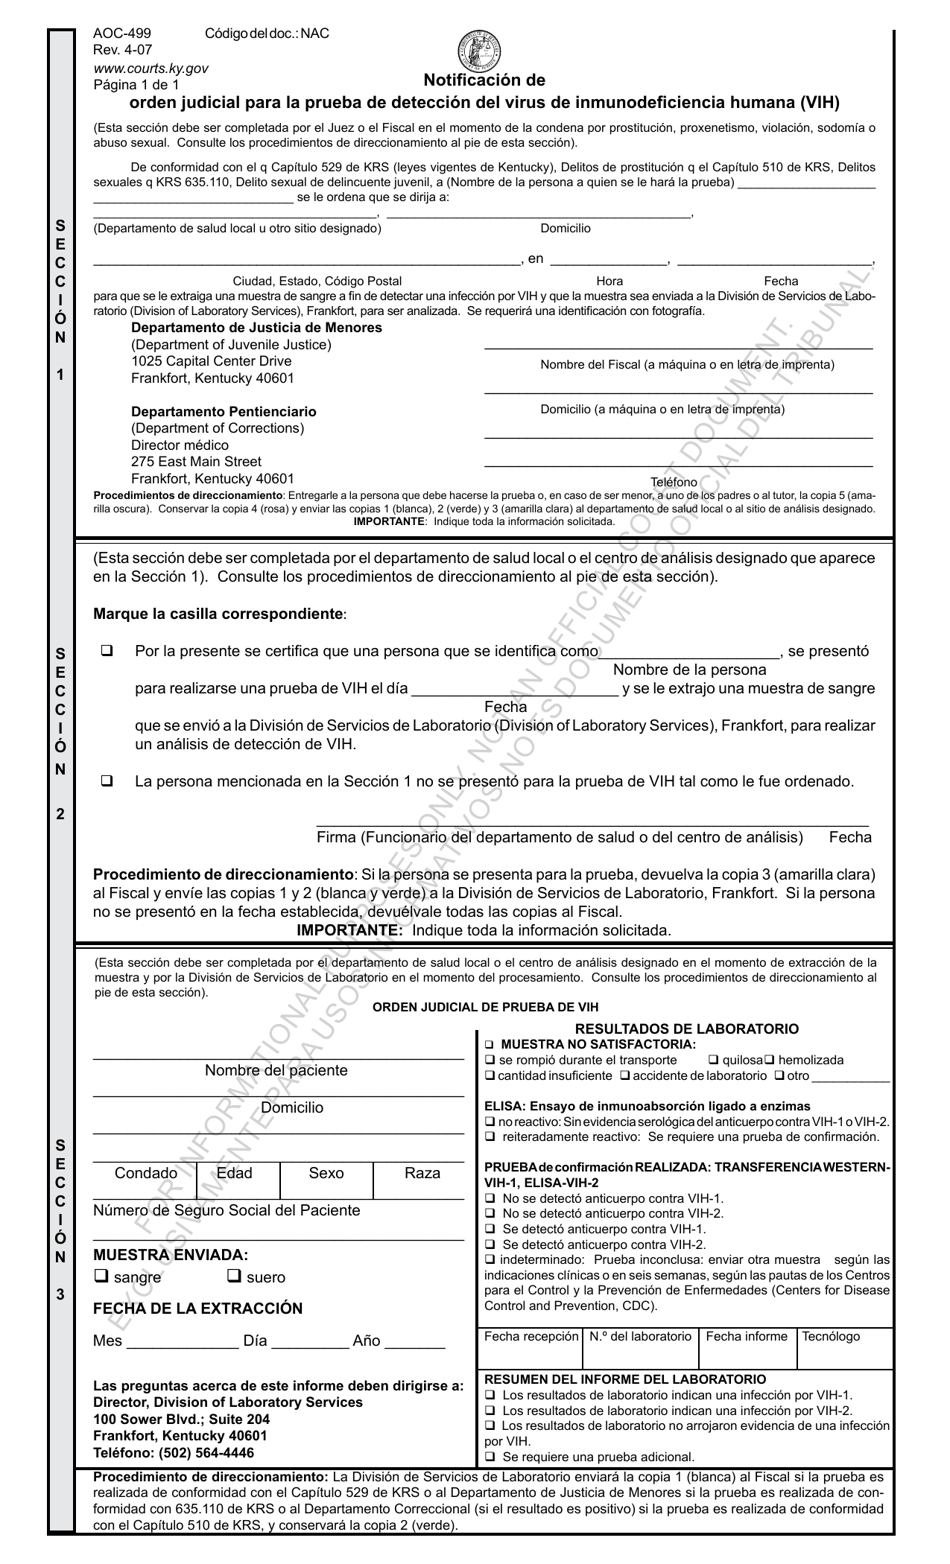 Formulario AOC-499 Notificacion De Orden Judicial Para La Prueba De Deteccion Del Virus De Inmunodeficiencia Humana (Vih) - Kentucky (Spanish), Page 1